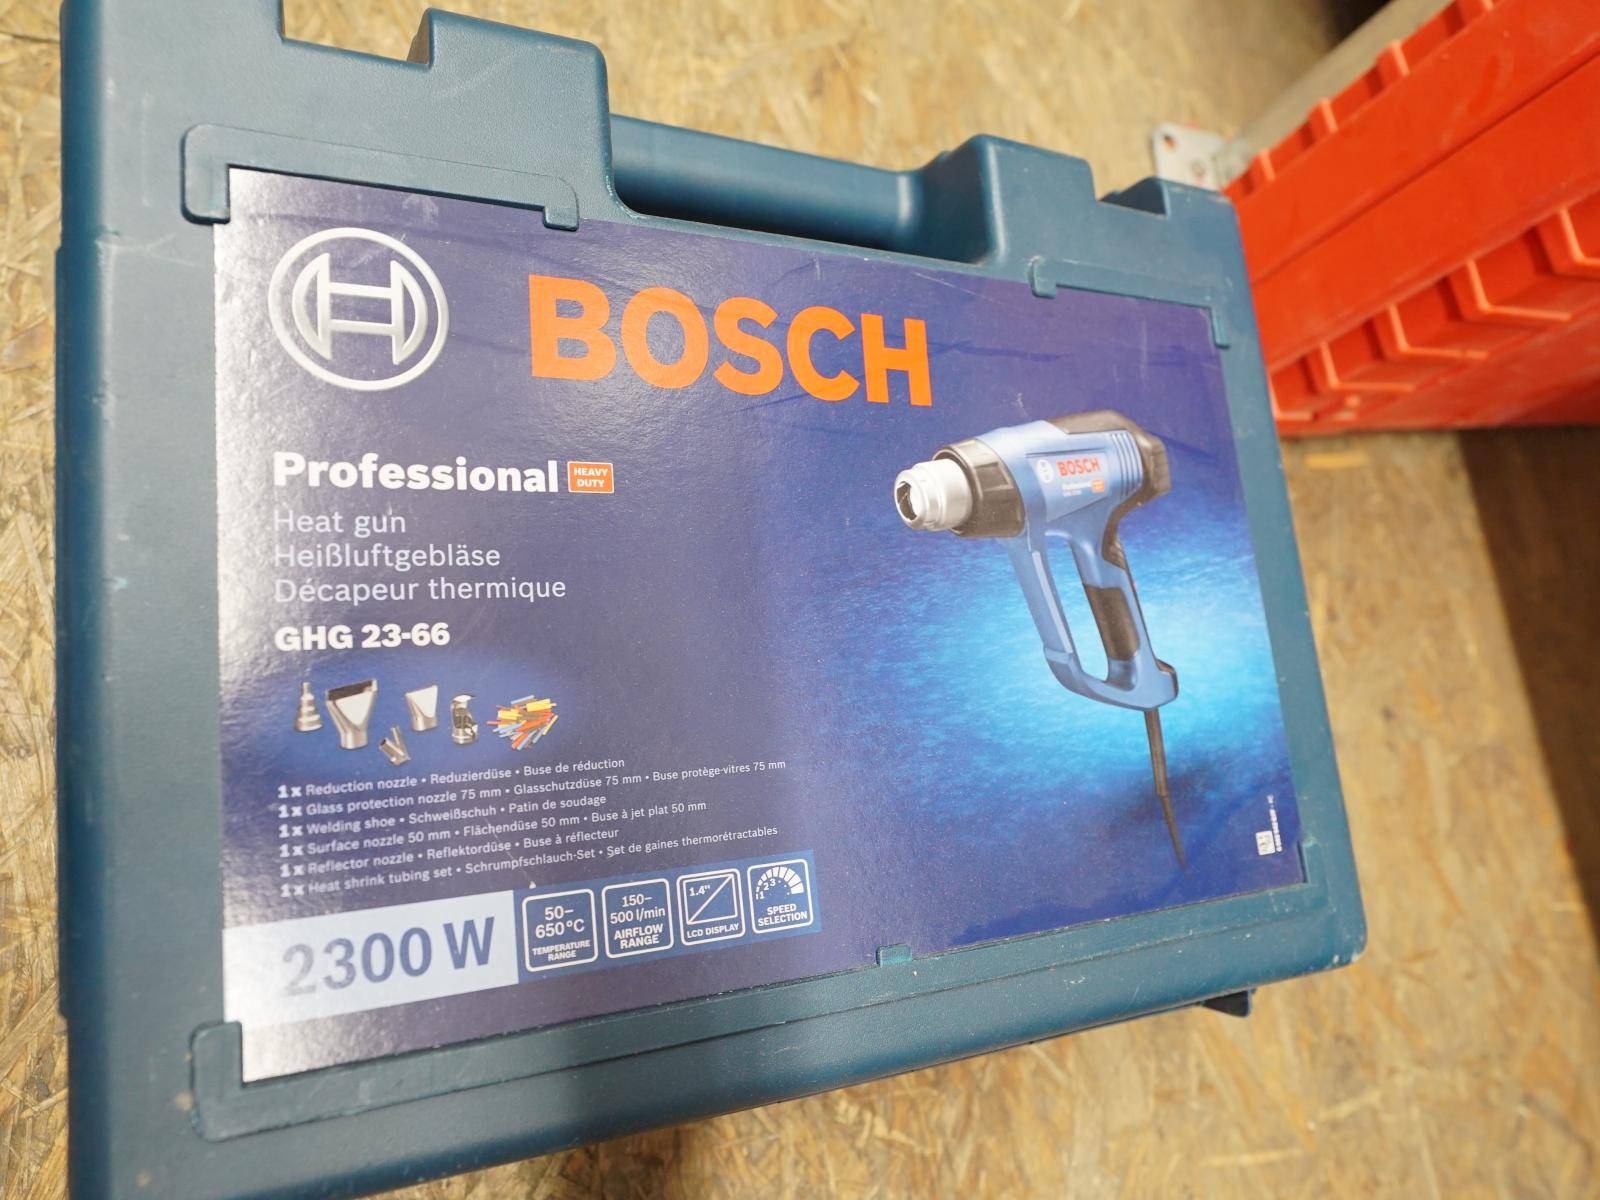 Auction 20.2.24 - Power BOSCH 90 GHG + tool GST E 23-66